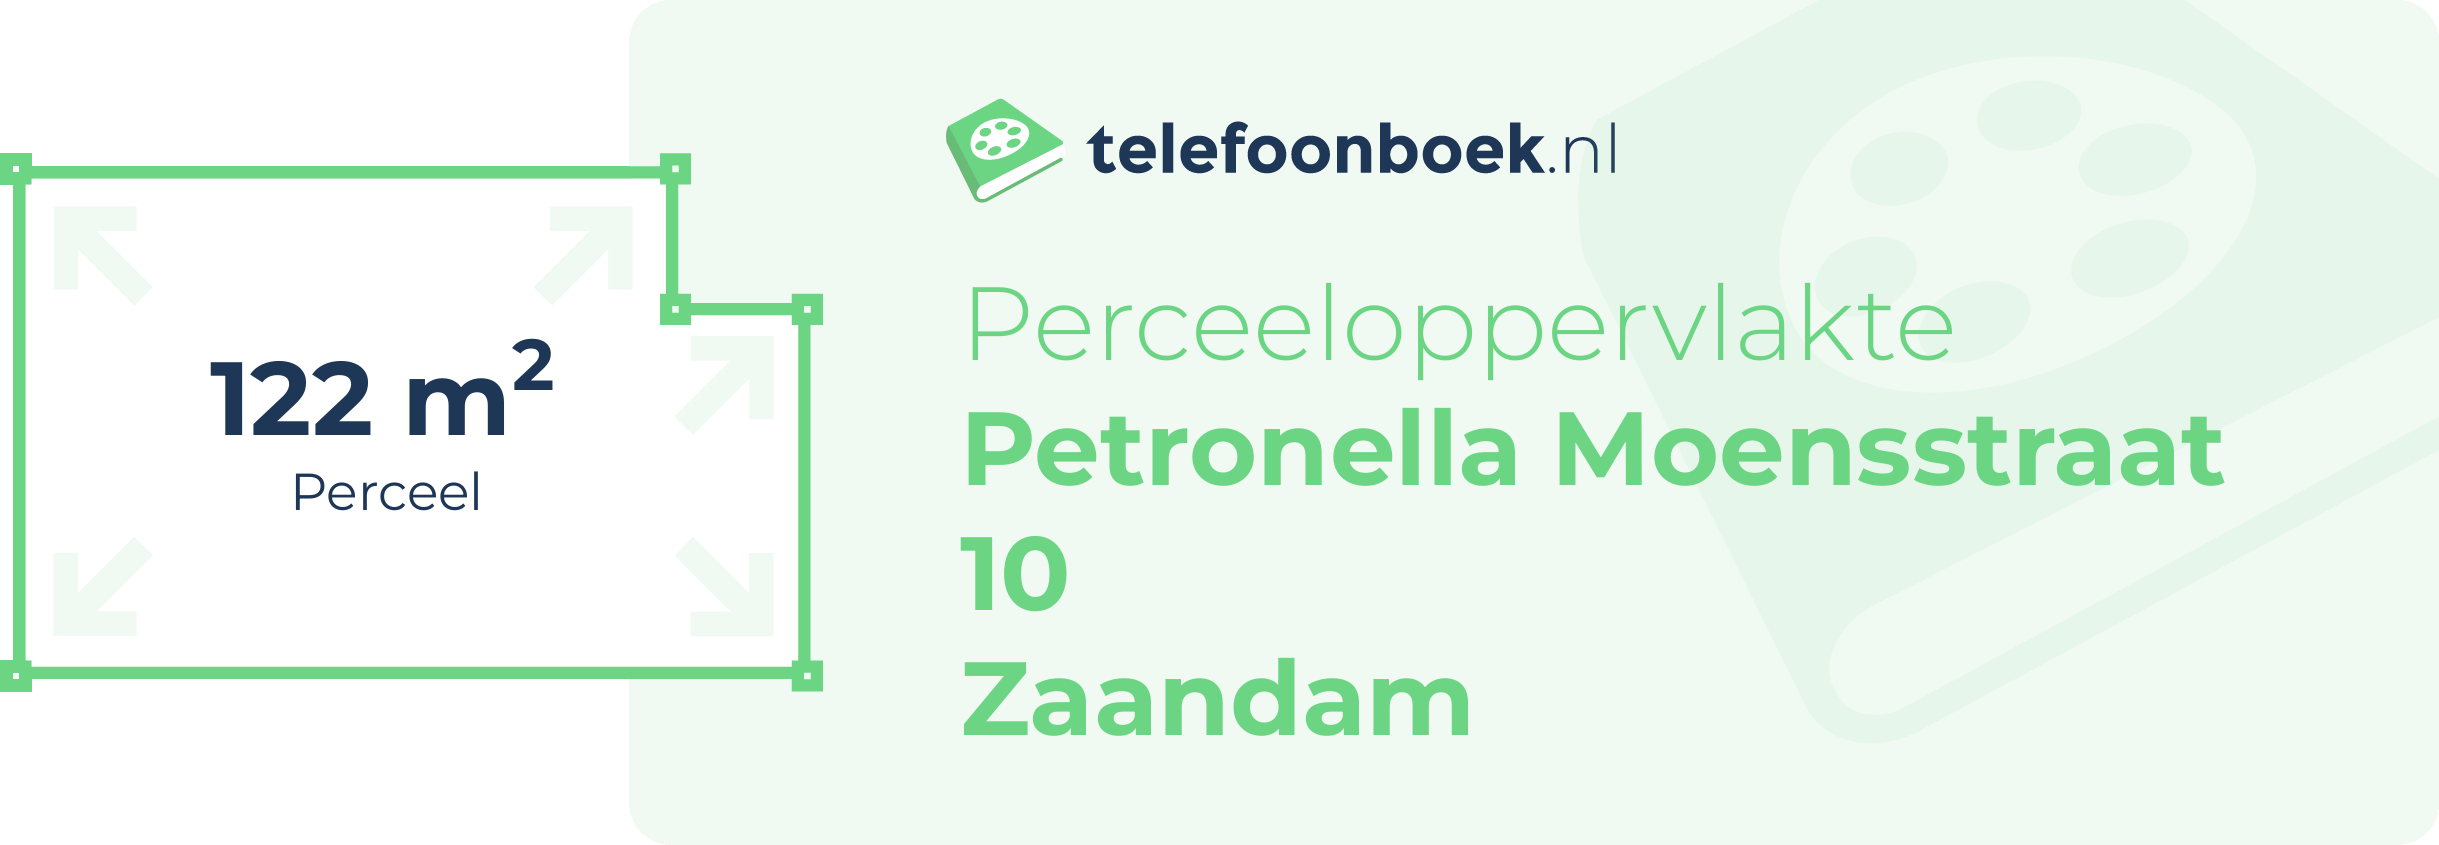 Perceeloppervlakte Petronella Moensstraat 10 Zaandam